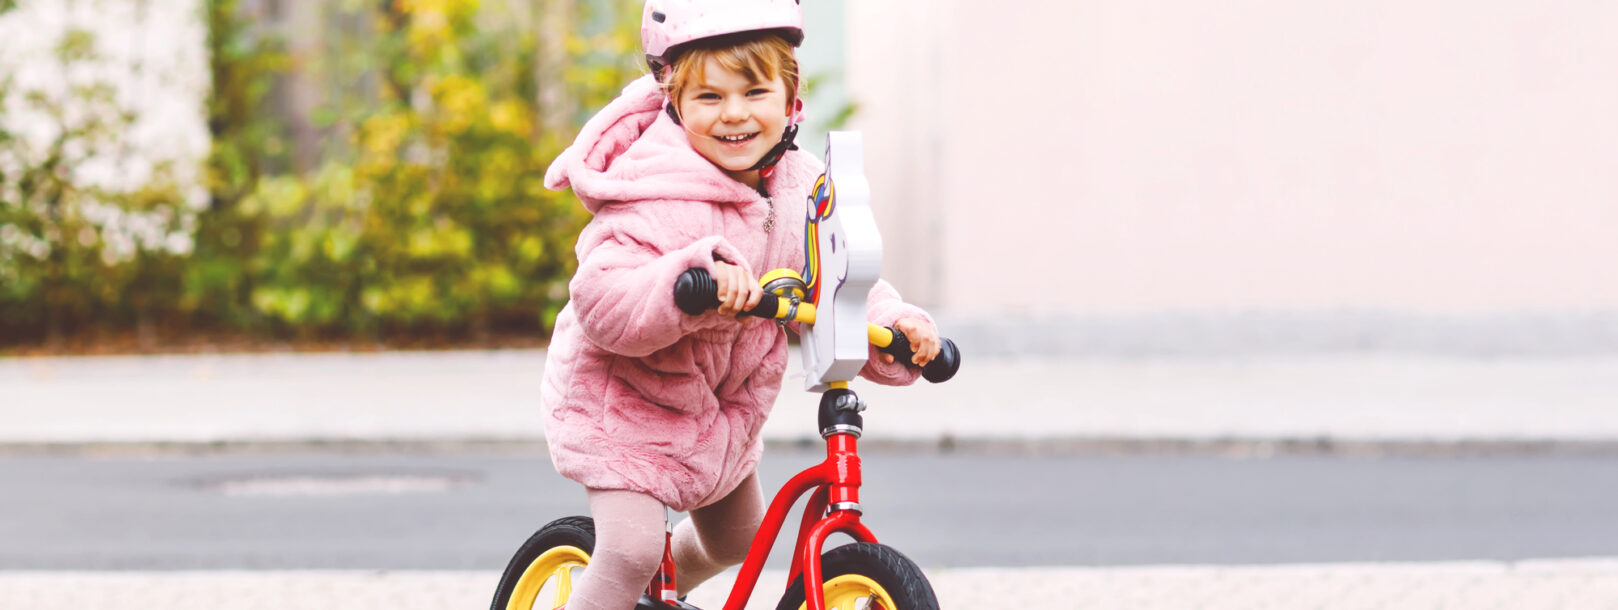 Lille smilende pige med cykelhjelm der leger med sin loebecykel